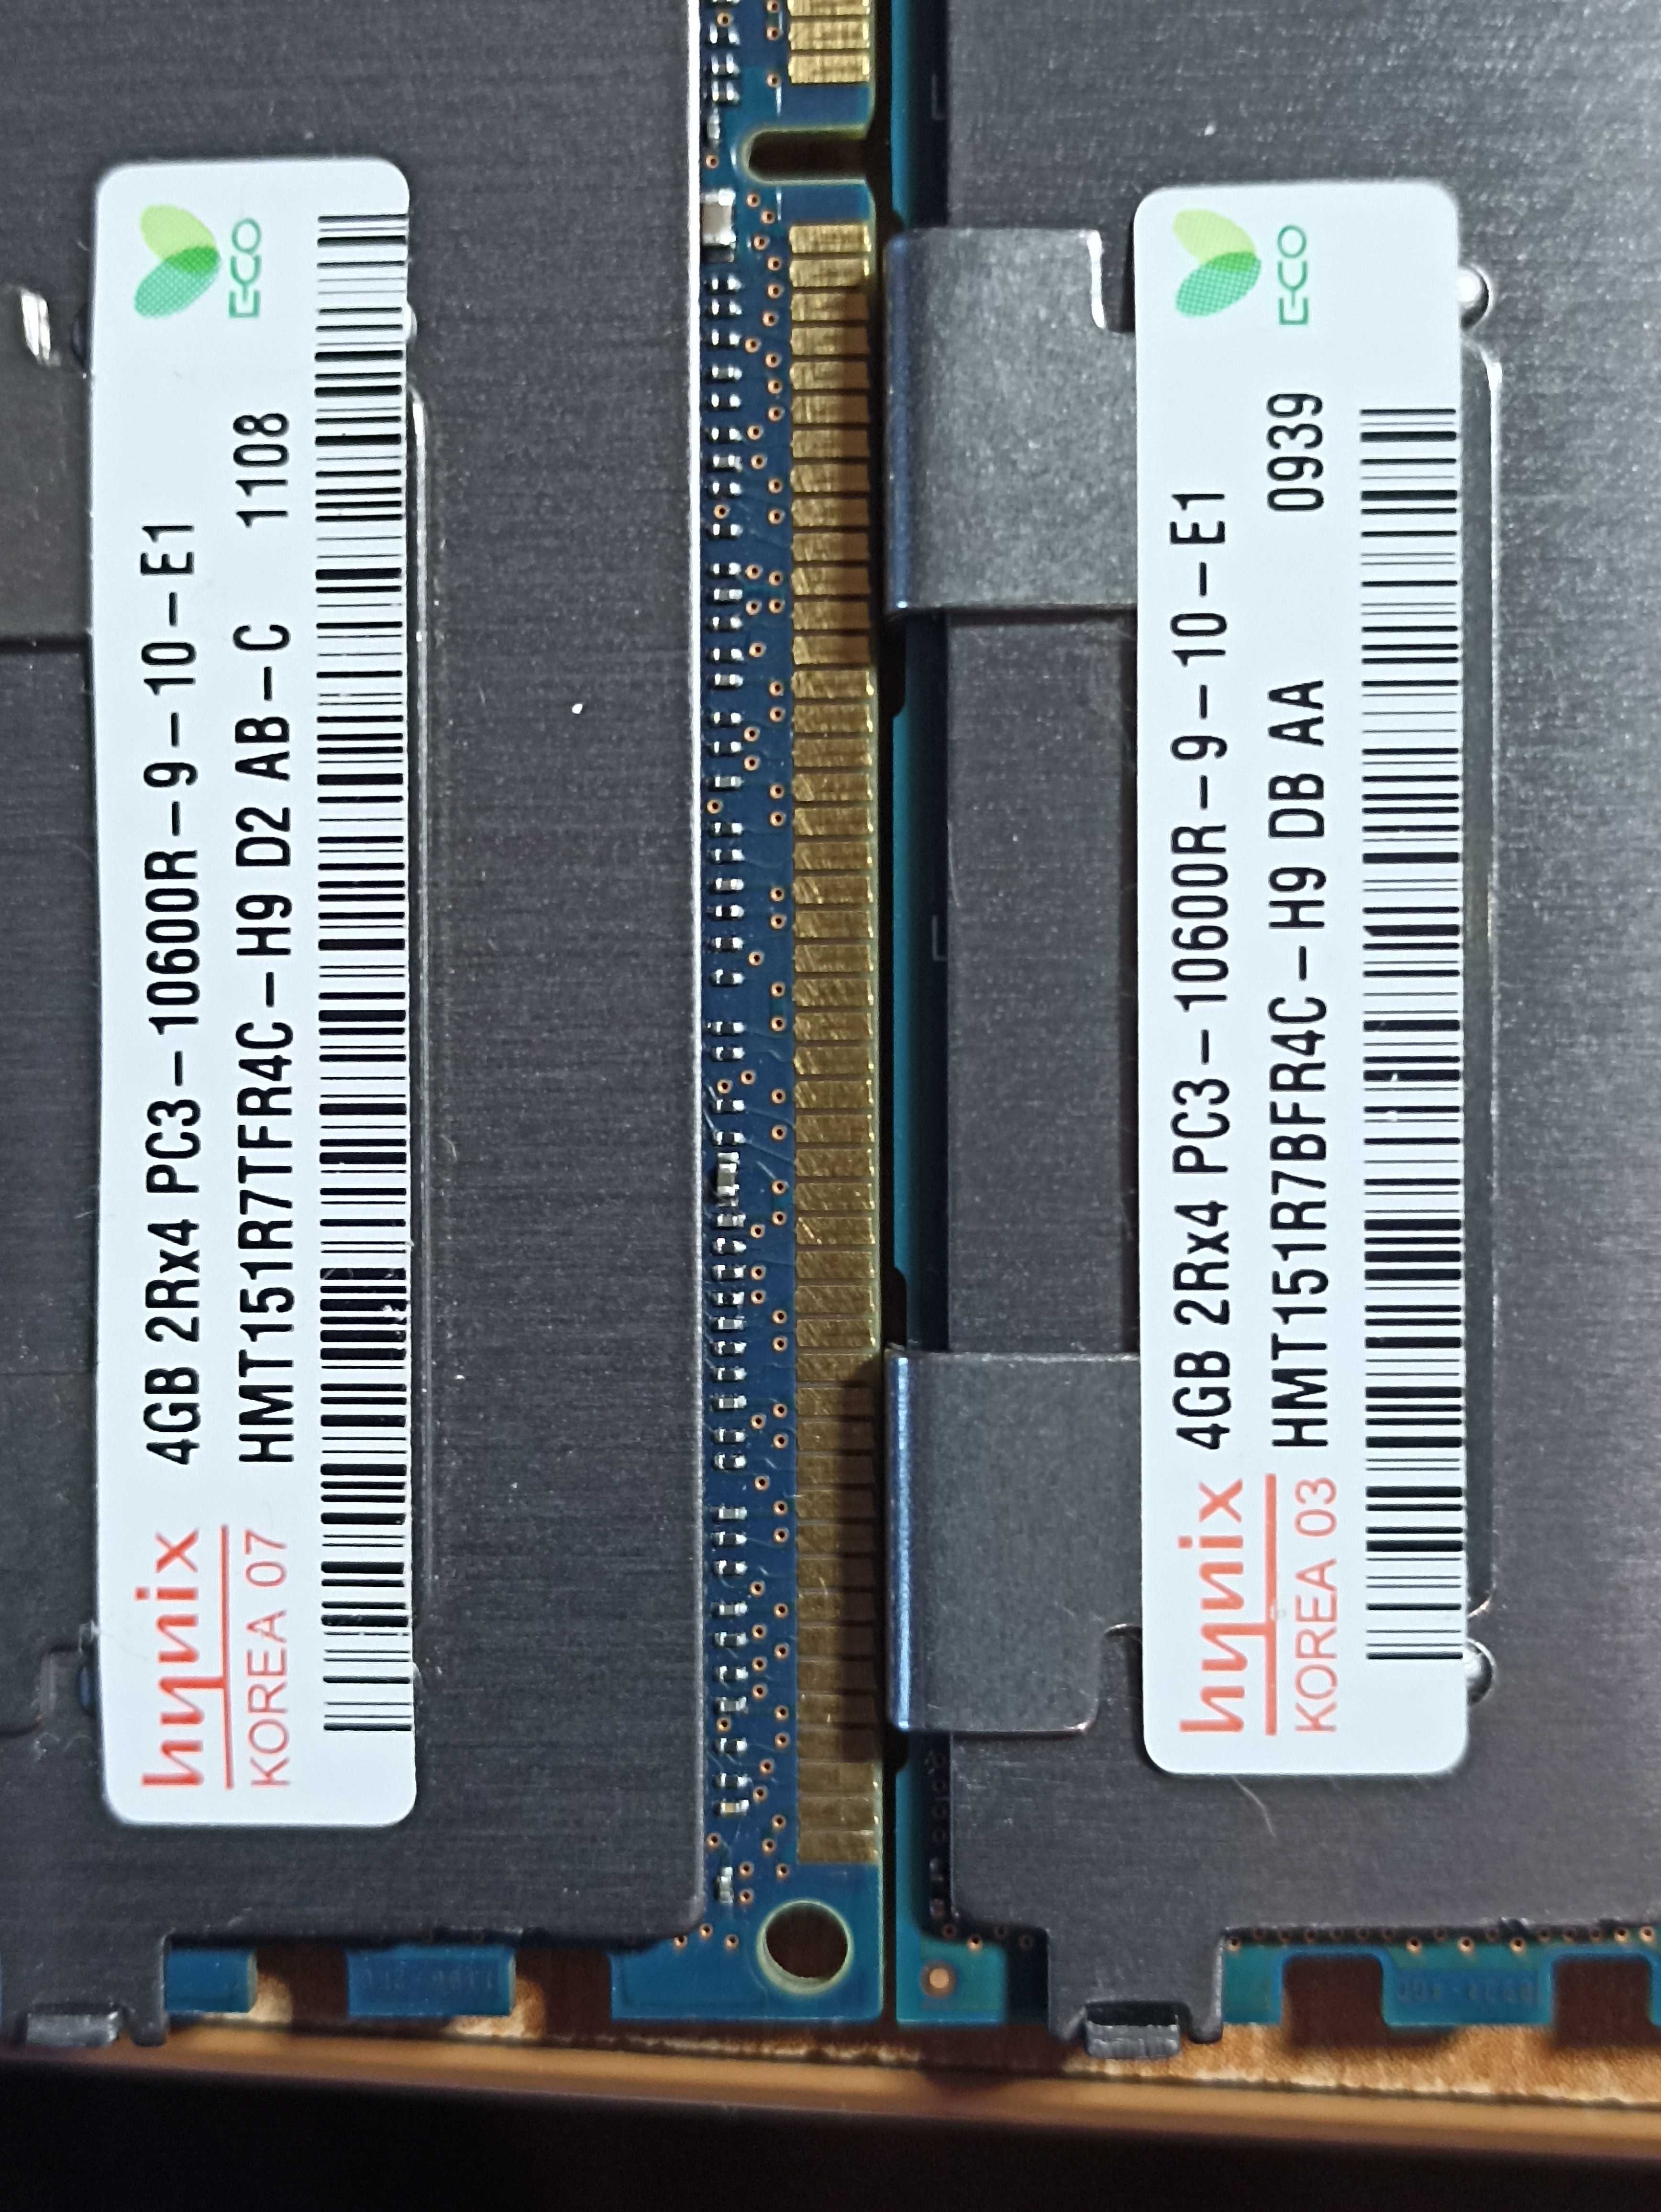 Память для Apple Power Mac G5 DDR3 SAMSUNG 4GB 2Rx4 PC3 -10600R